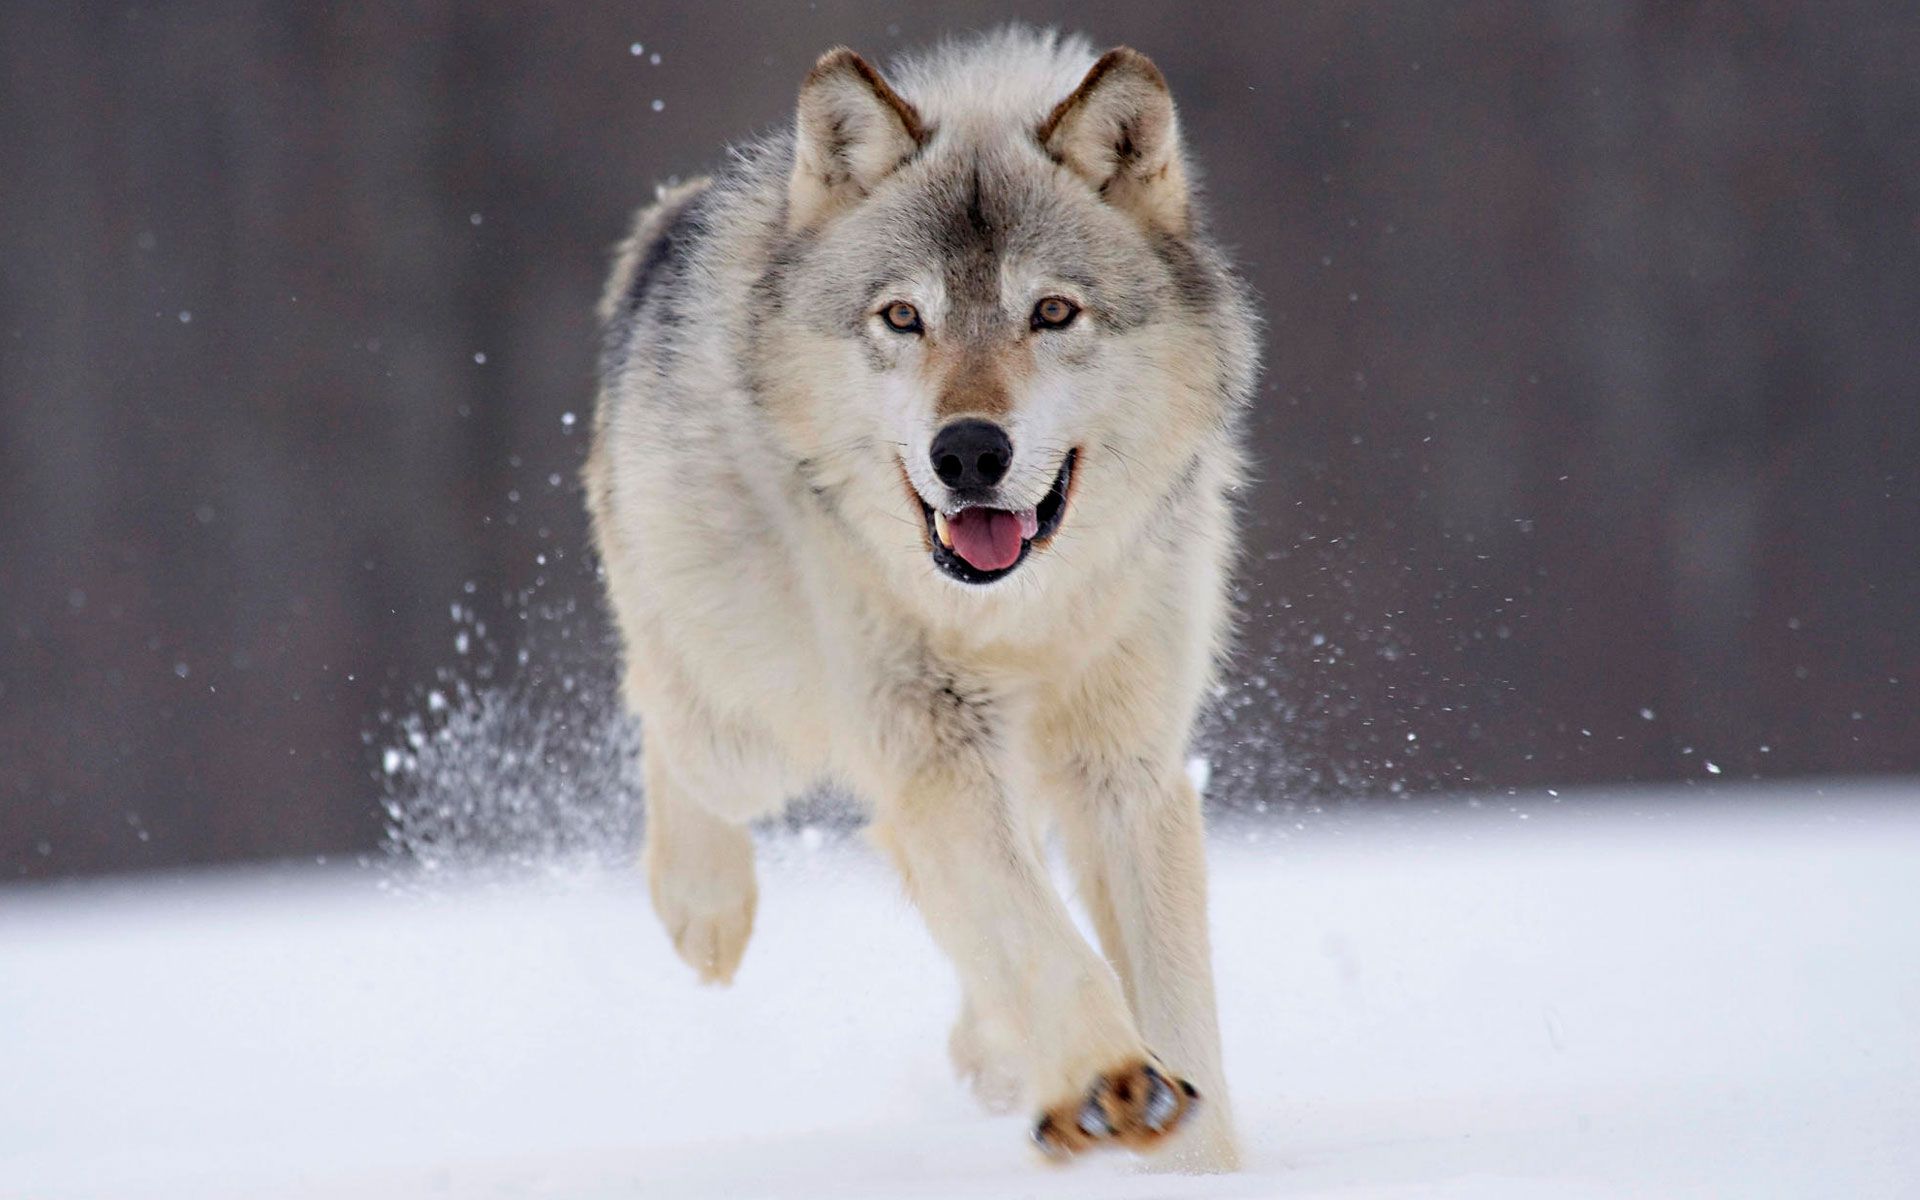 Wolf HD wallpapers - A beautiful dog like animal